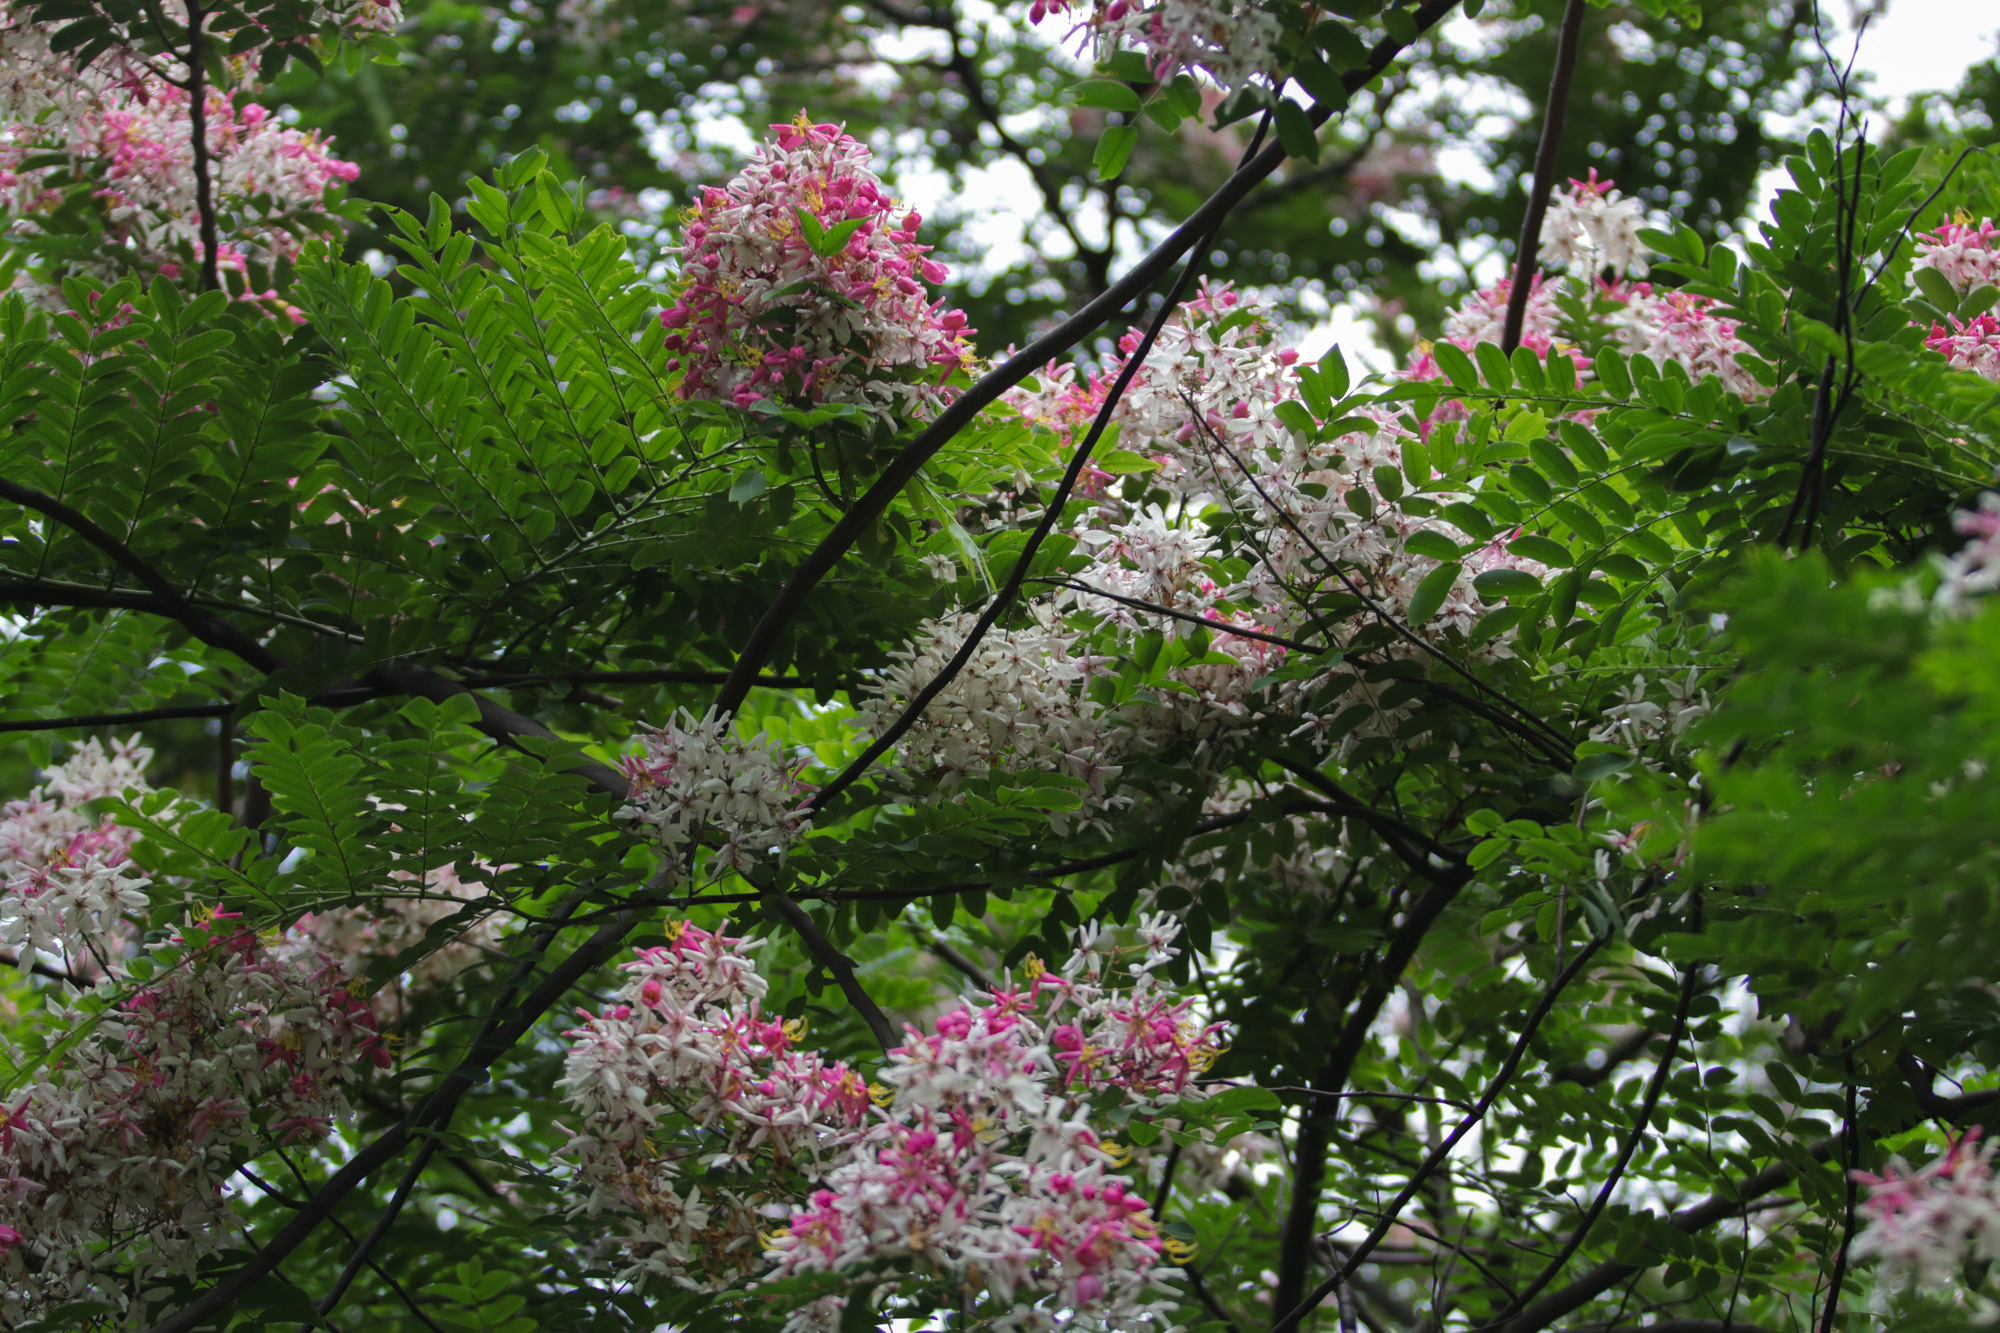 Mãn nhãn muồng hoa đào bung nở đẹp mê hồn ở Hà Nội - Ảnh 6.